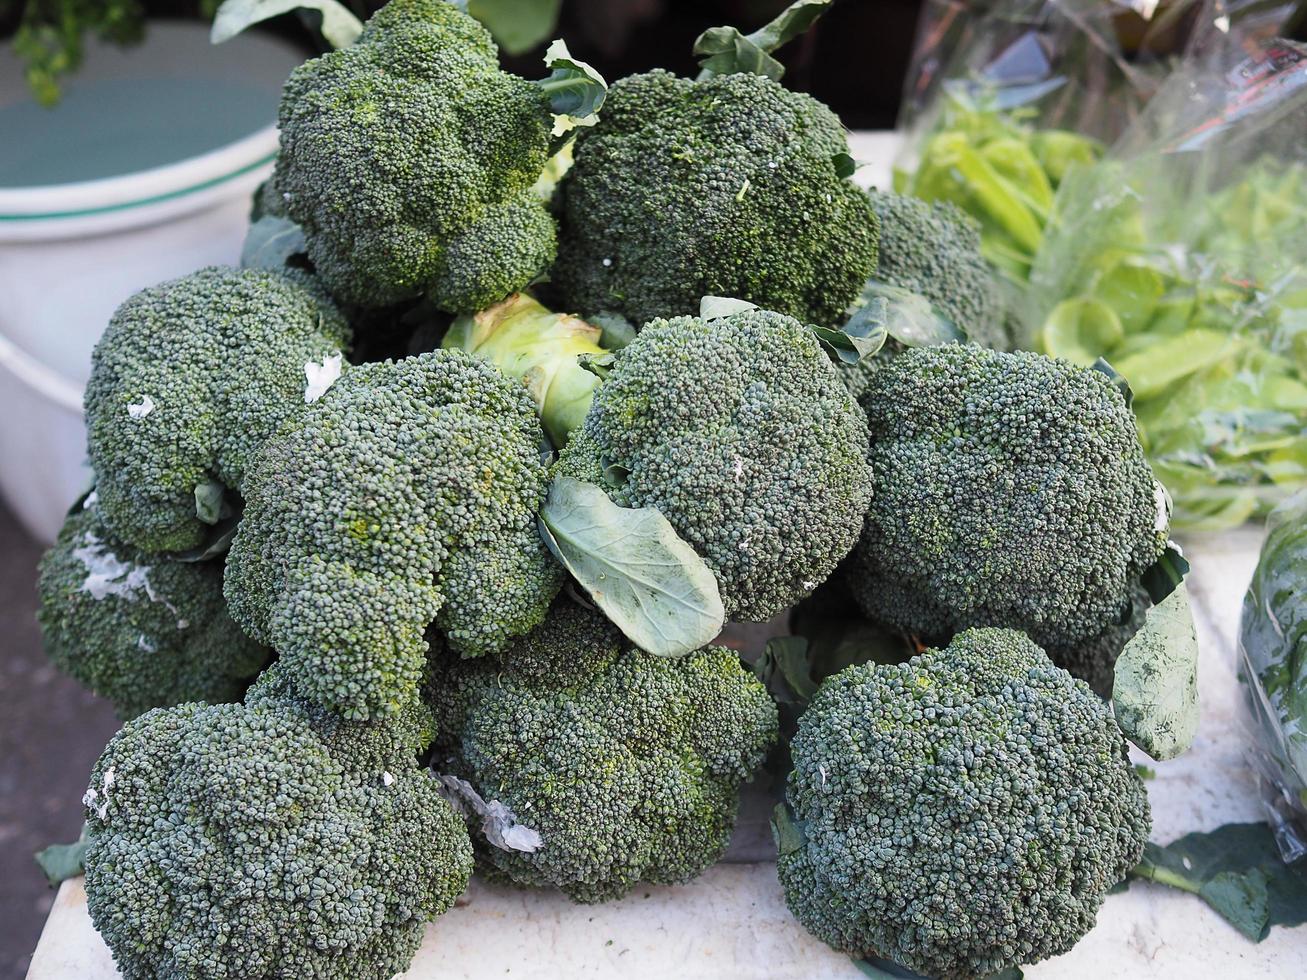 färsk broccoli till salu på marknaden foto